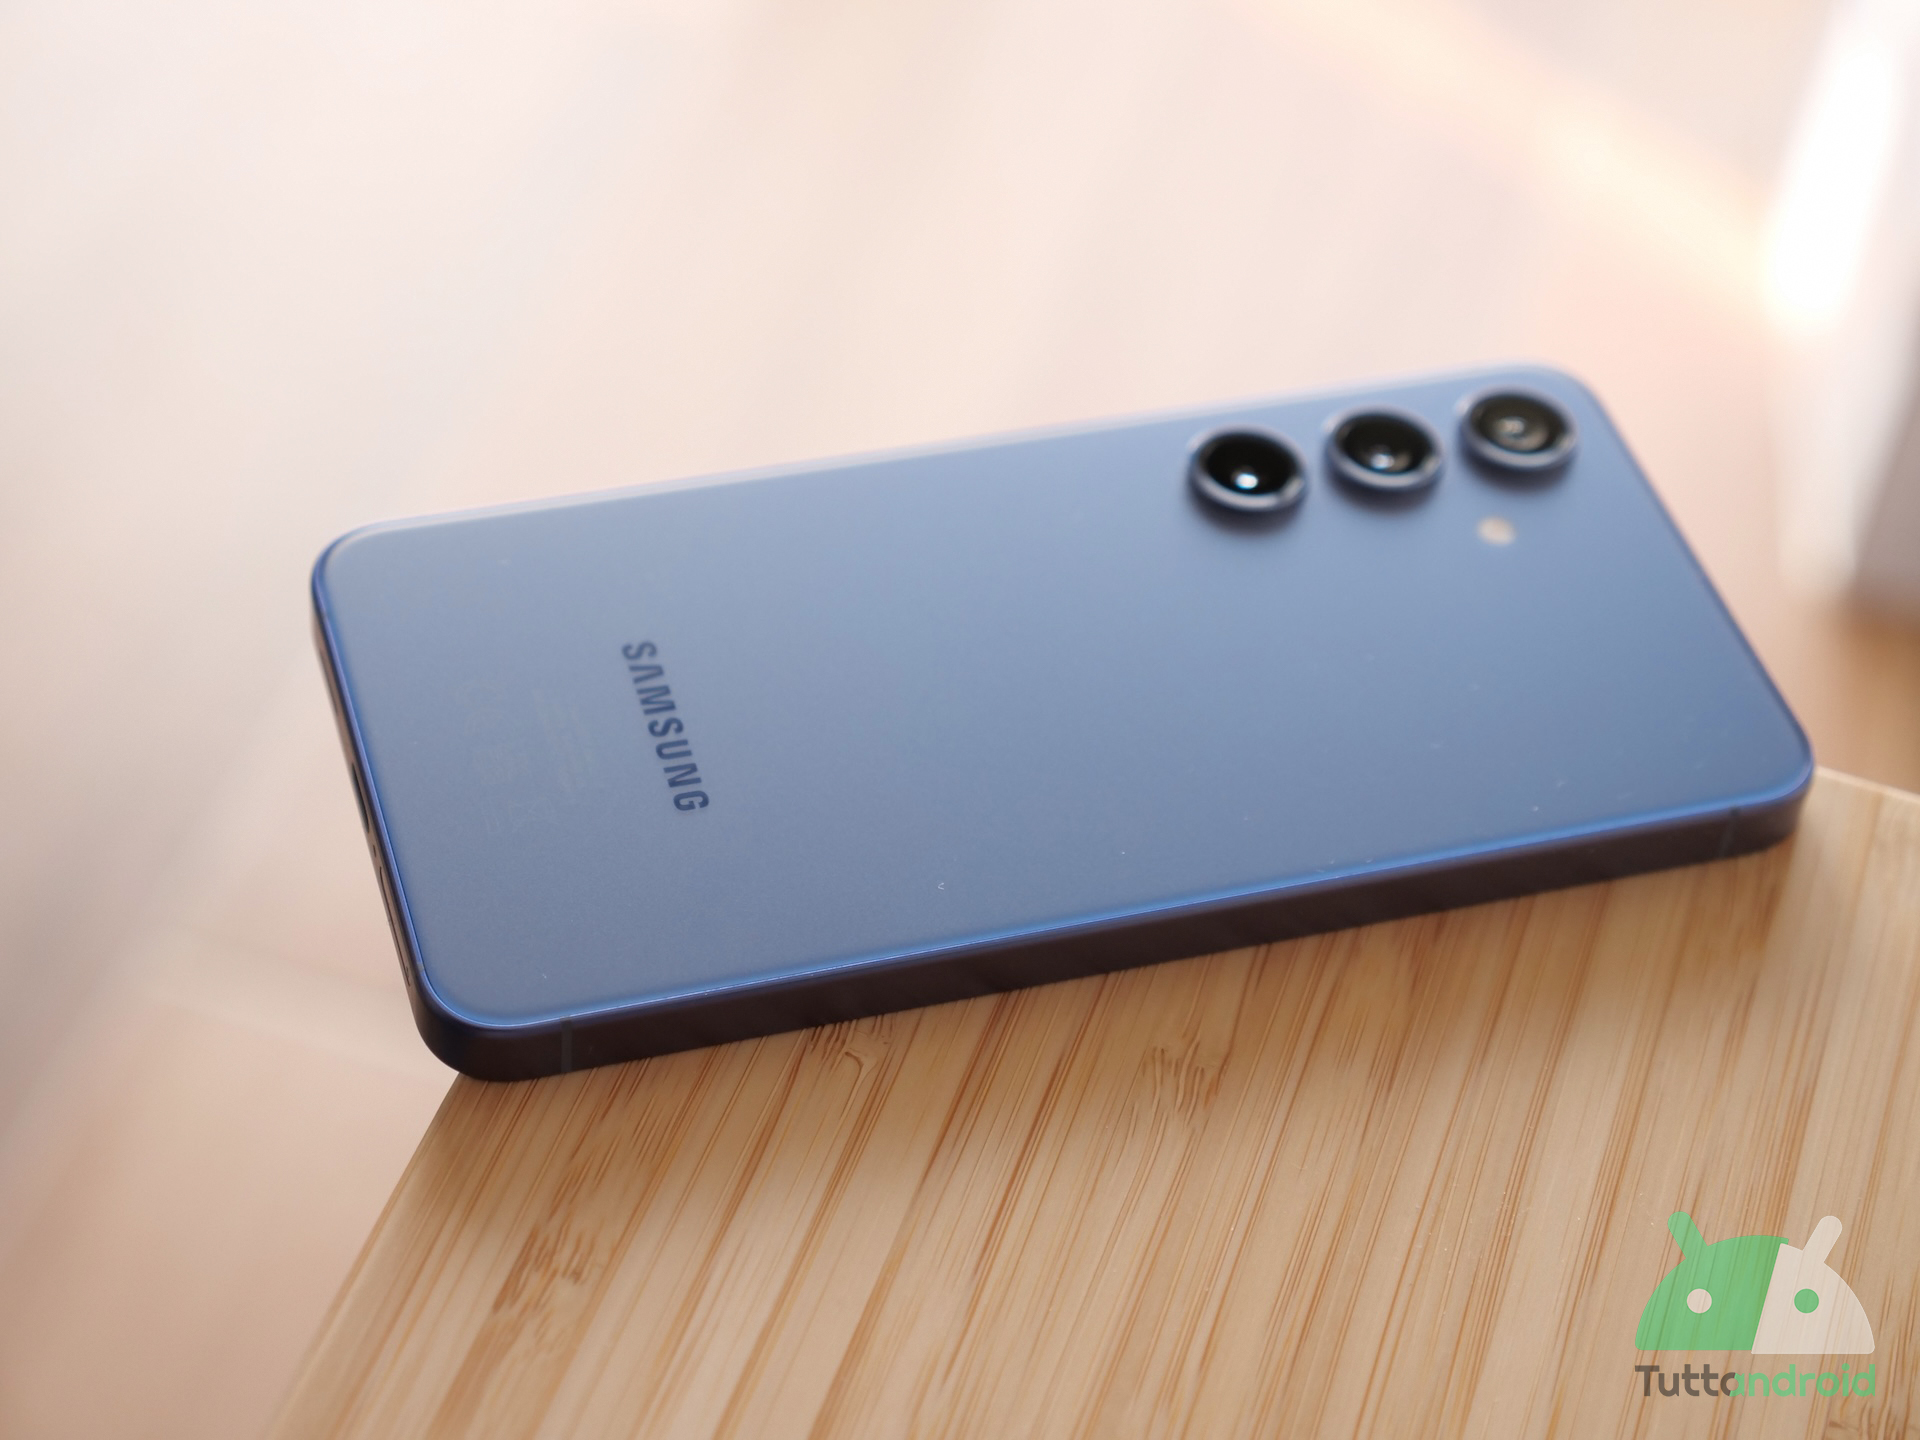 Samsung accoglie le lamentele e riporta un’apprezzata funzione per la batteria